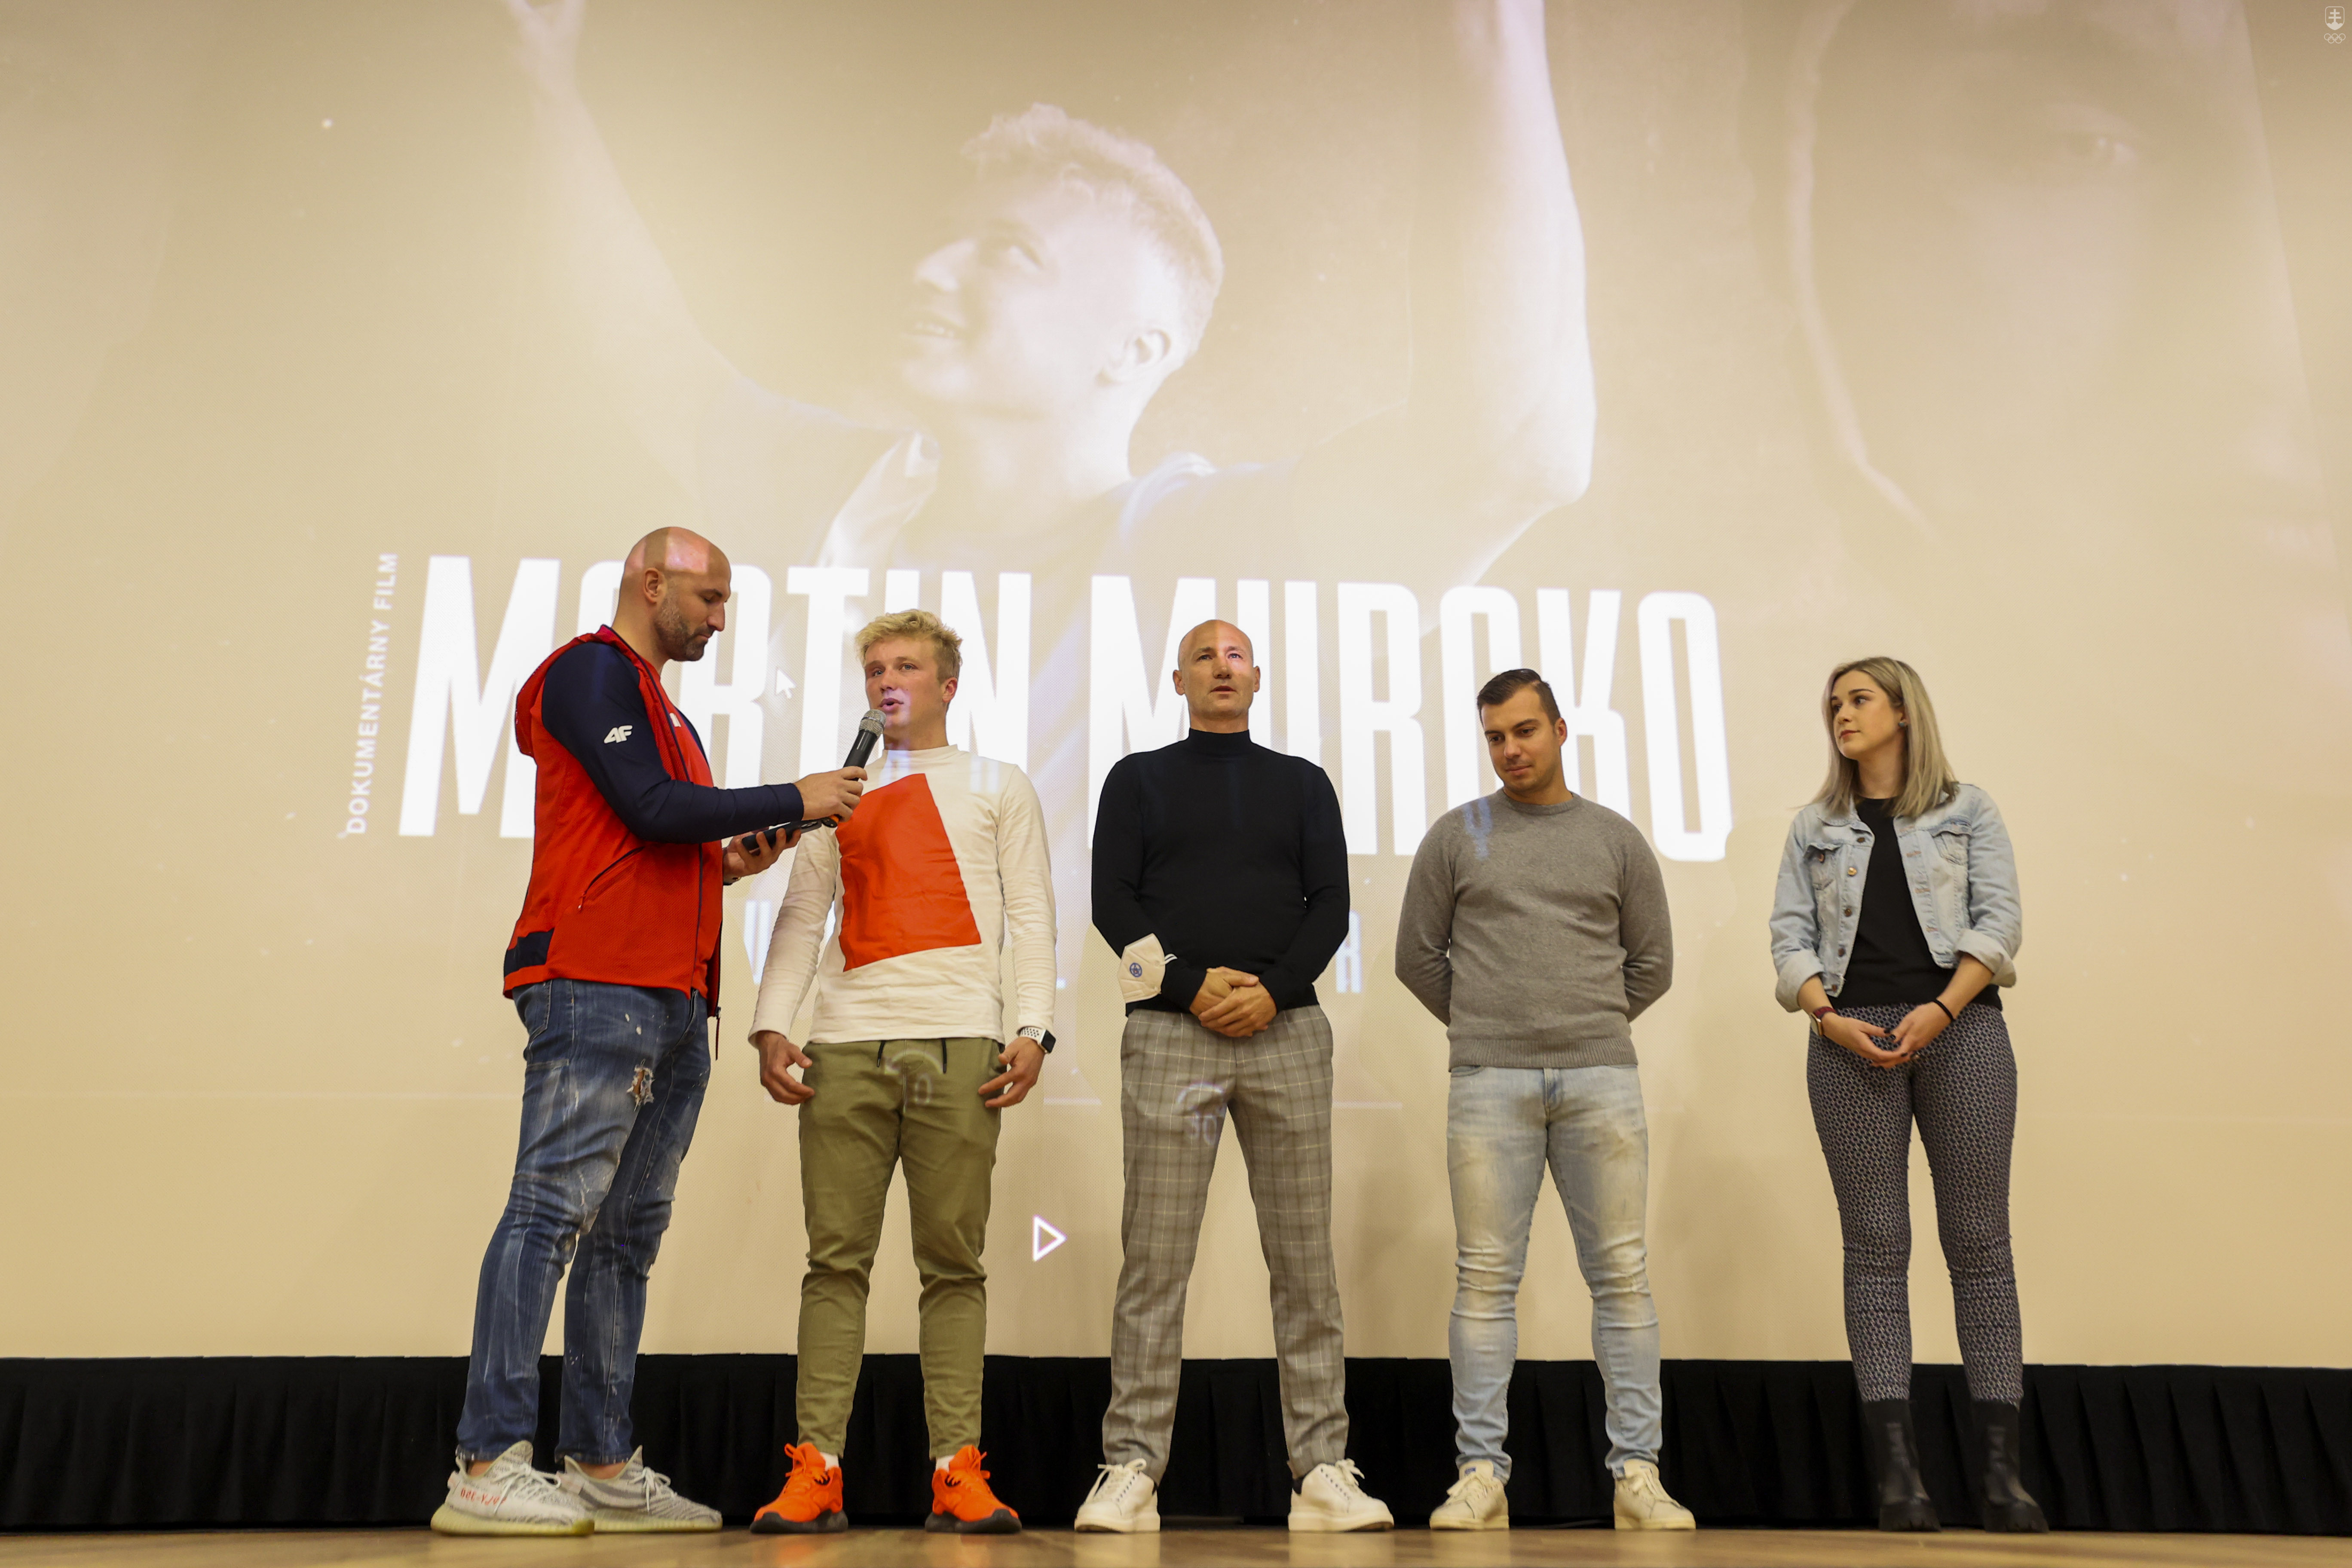 Premietanie filmového dokumentu o futbalistovi Martinovi Murckovi (druhý zľava). Vznik dokumentu podporila aj Nadácia SOŠV.